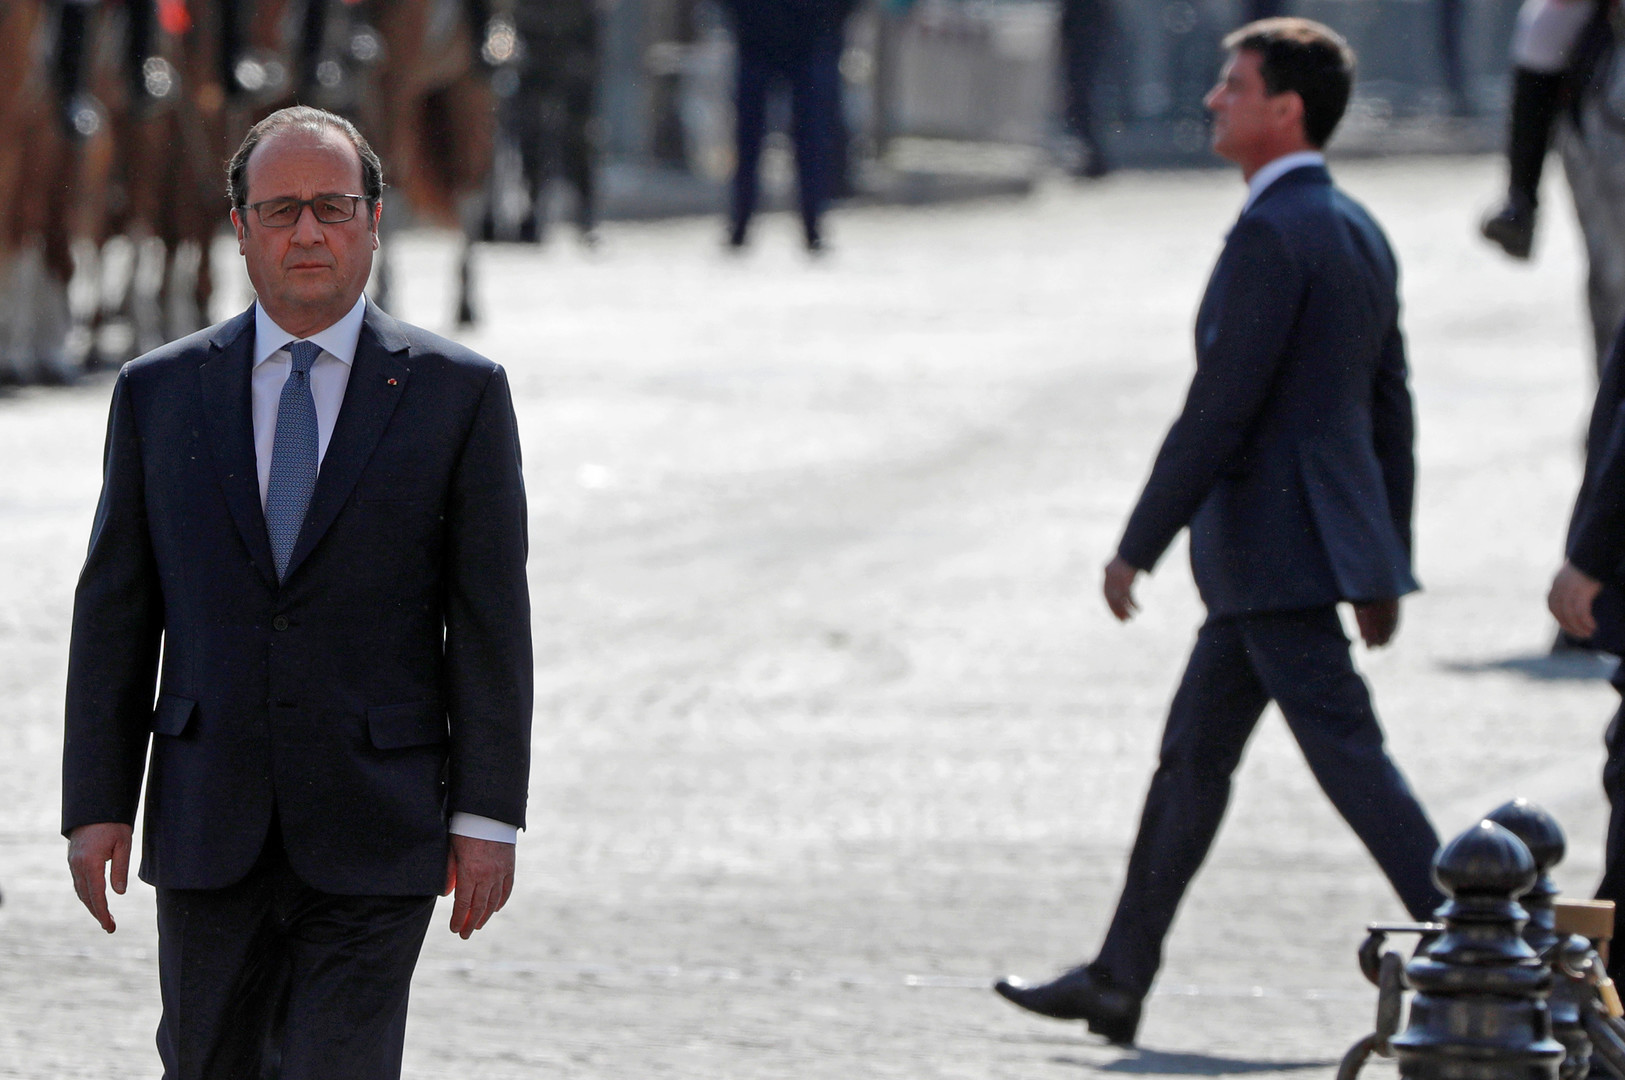 Effondrement de la cote de popularité de François Hollande et de Manuel Valls